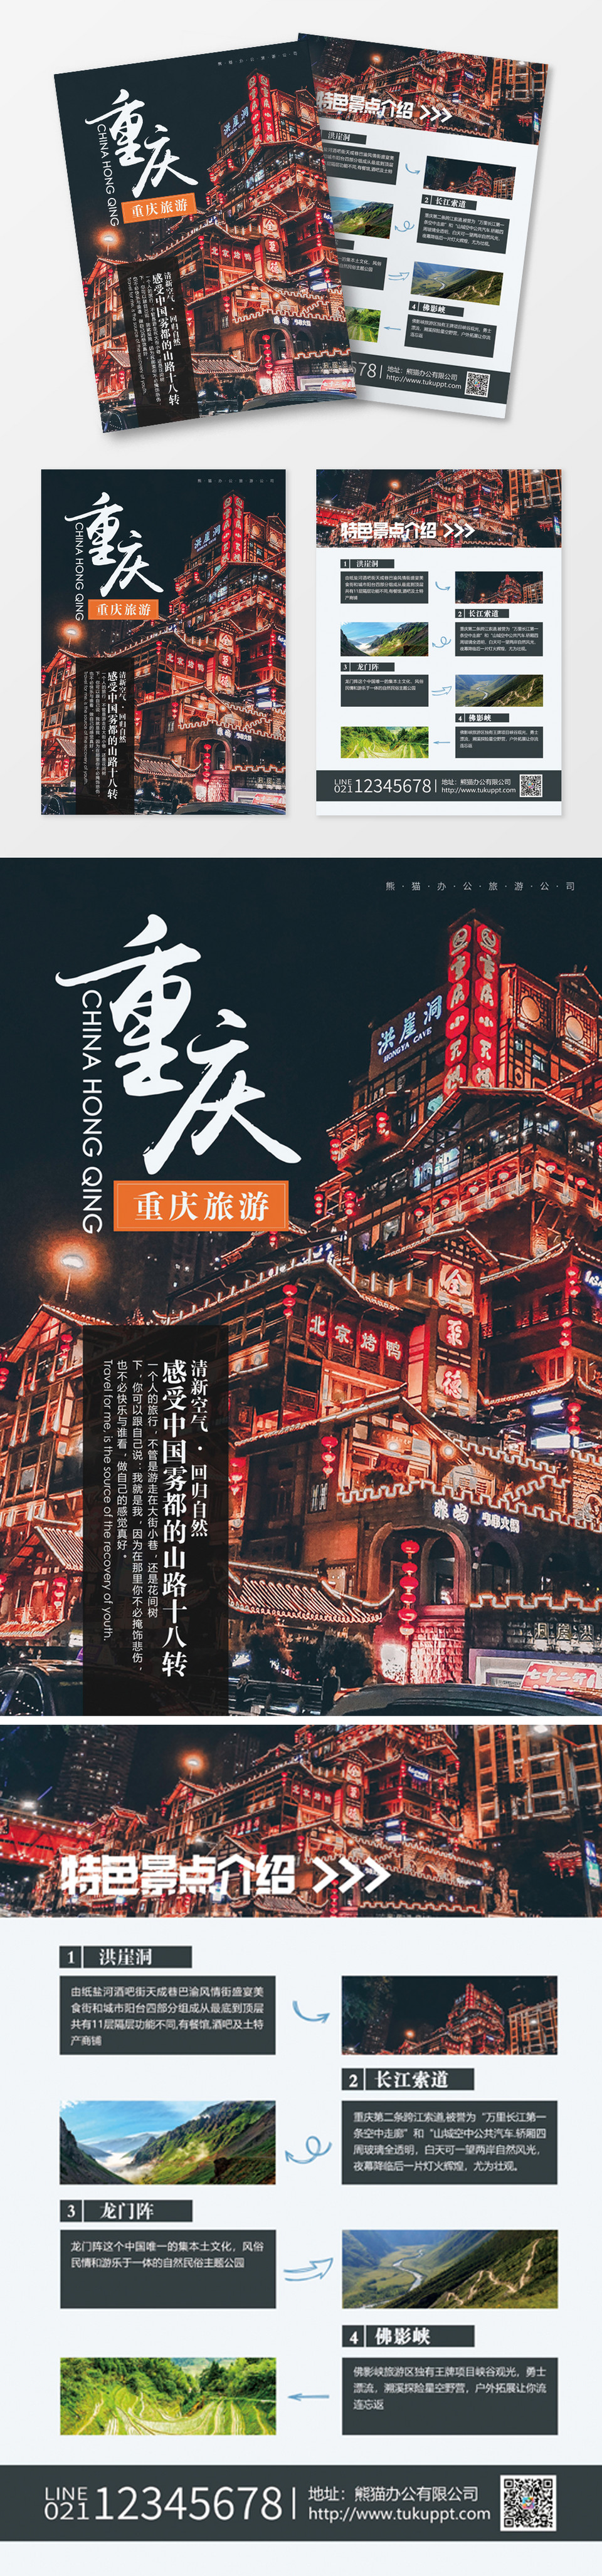 重庆旅游双面宣传单